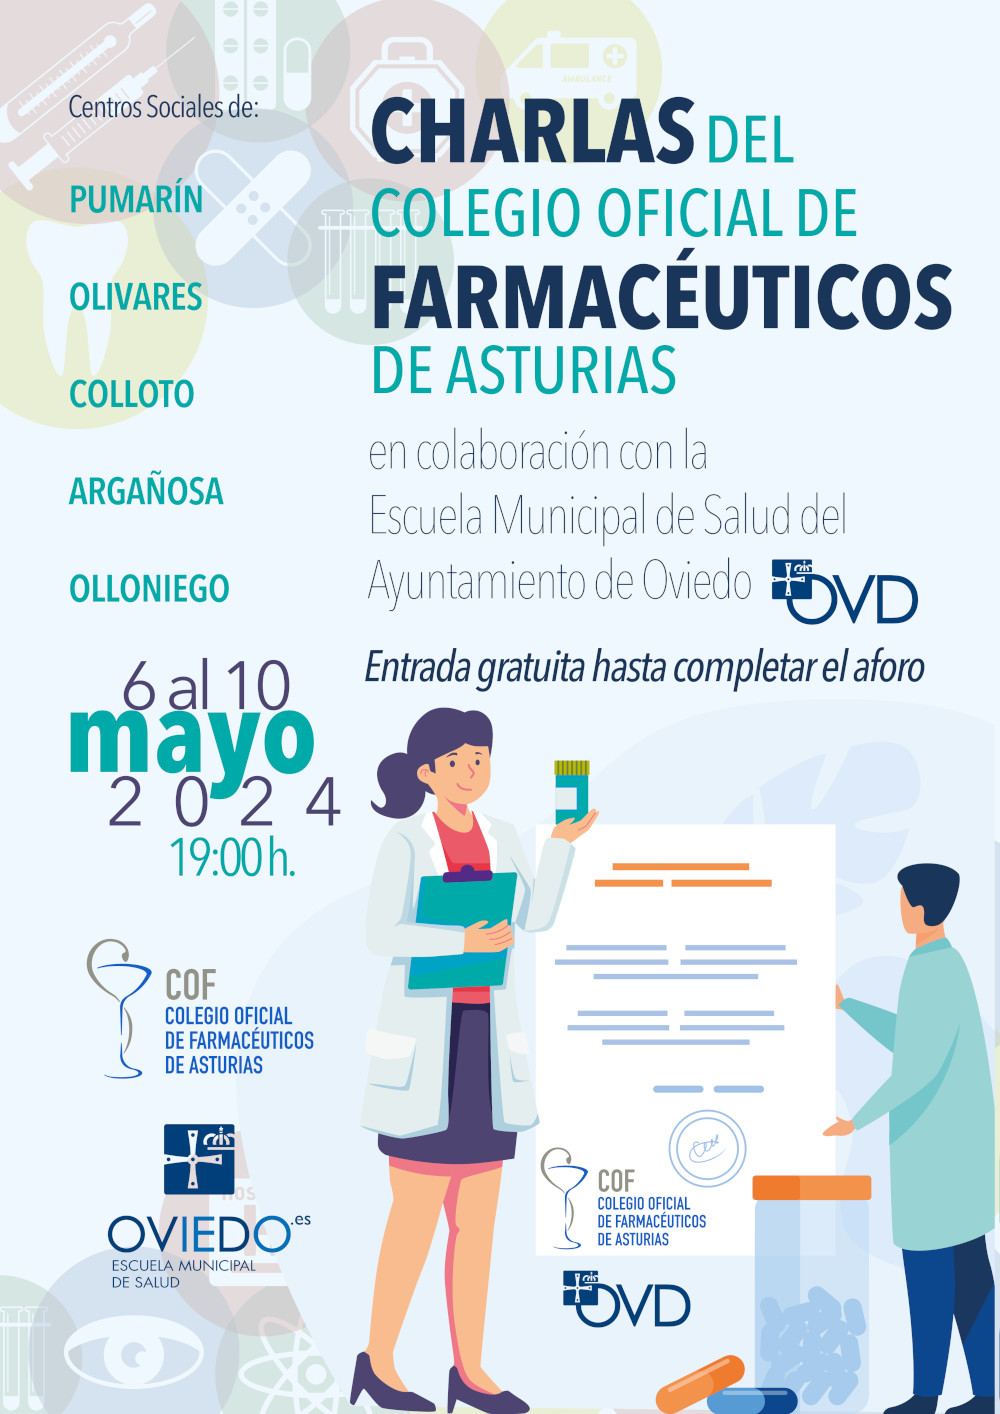 Escuela Municipal de Salud: "La compra para una alimentación saludable" (charlas Colegio Oficial de Farmacéuticos de Asturias)